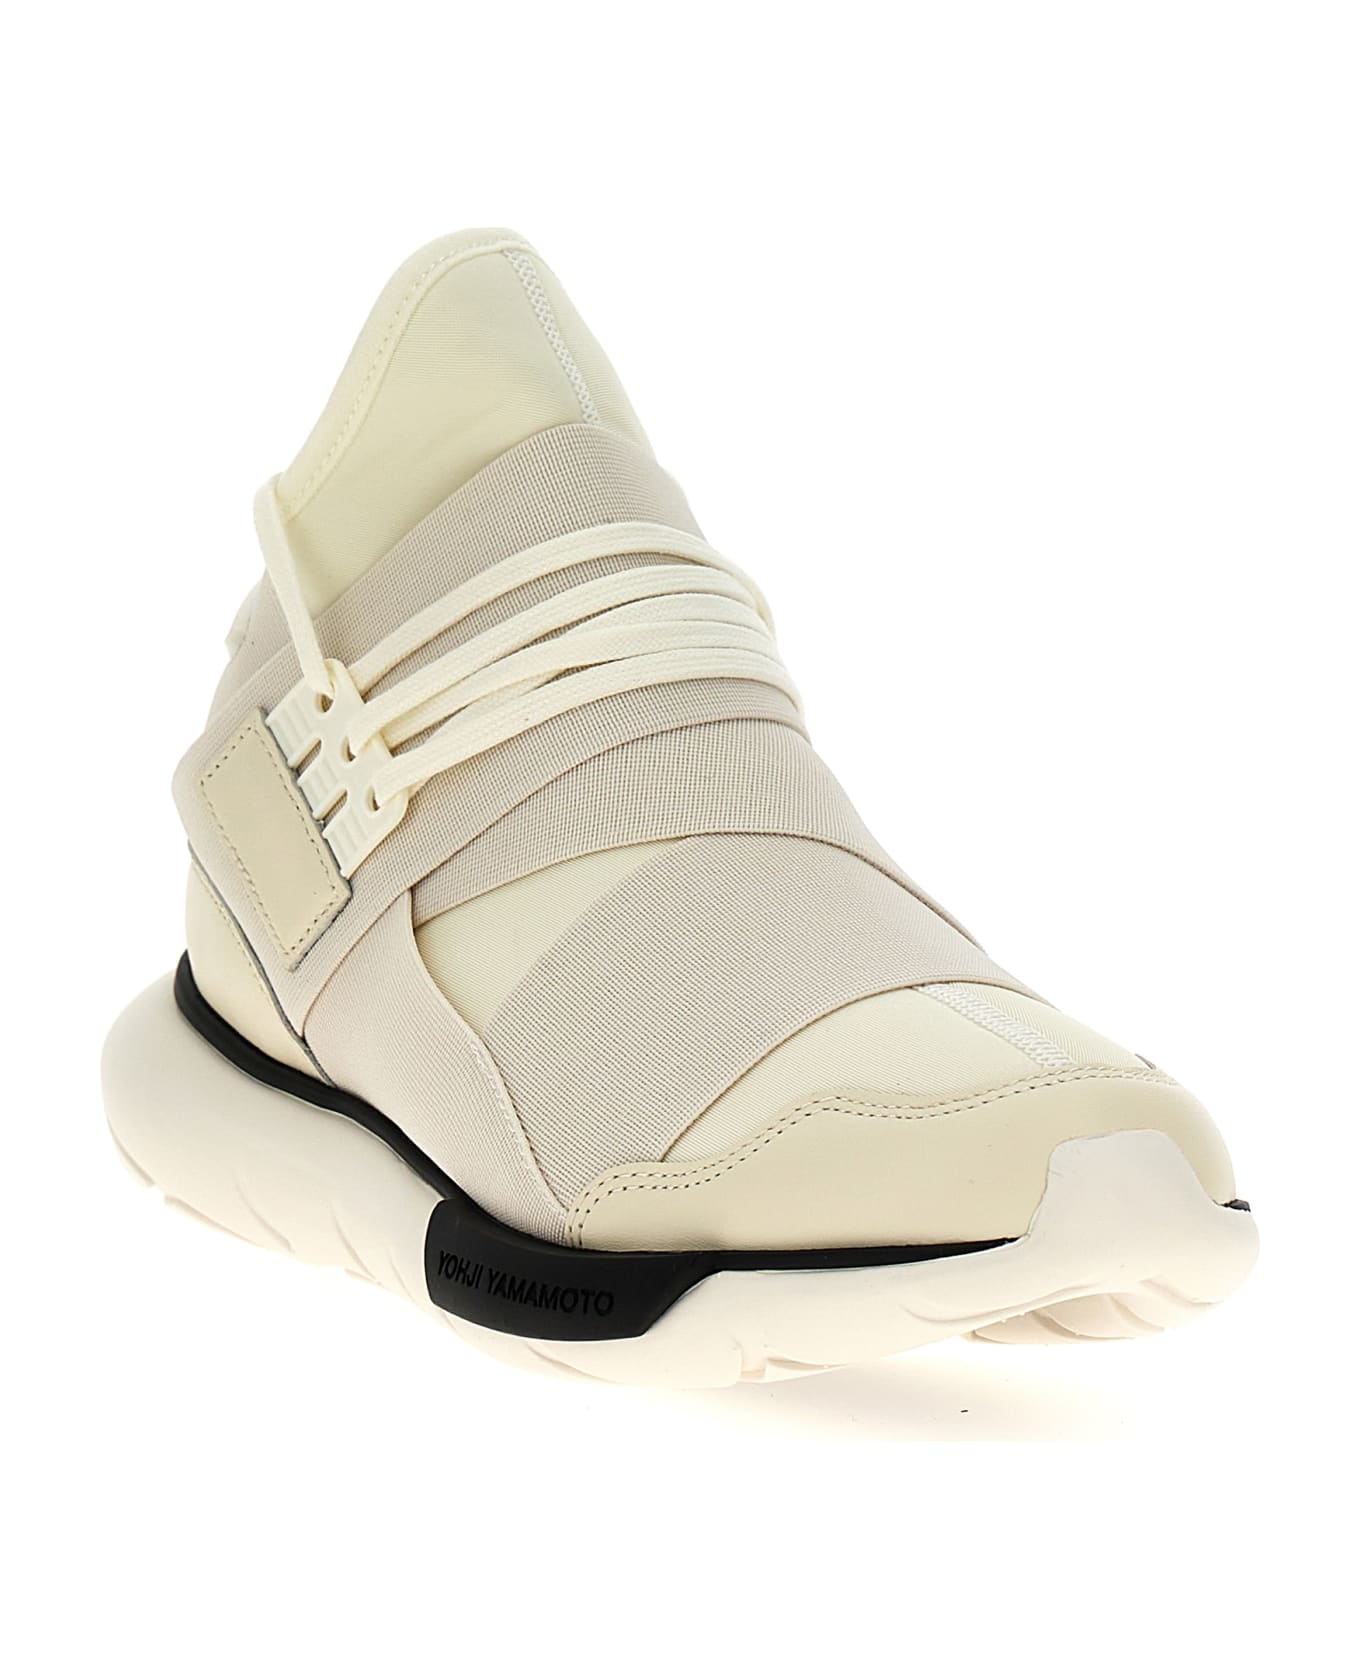 Y-3 'qasa' Sneakers - White スニーカー